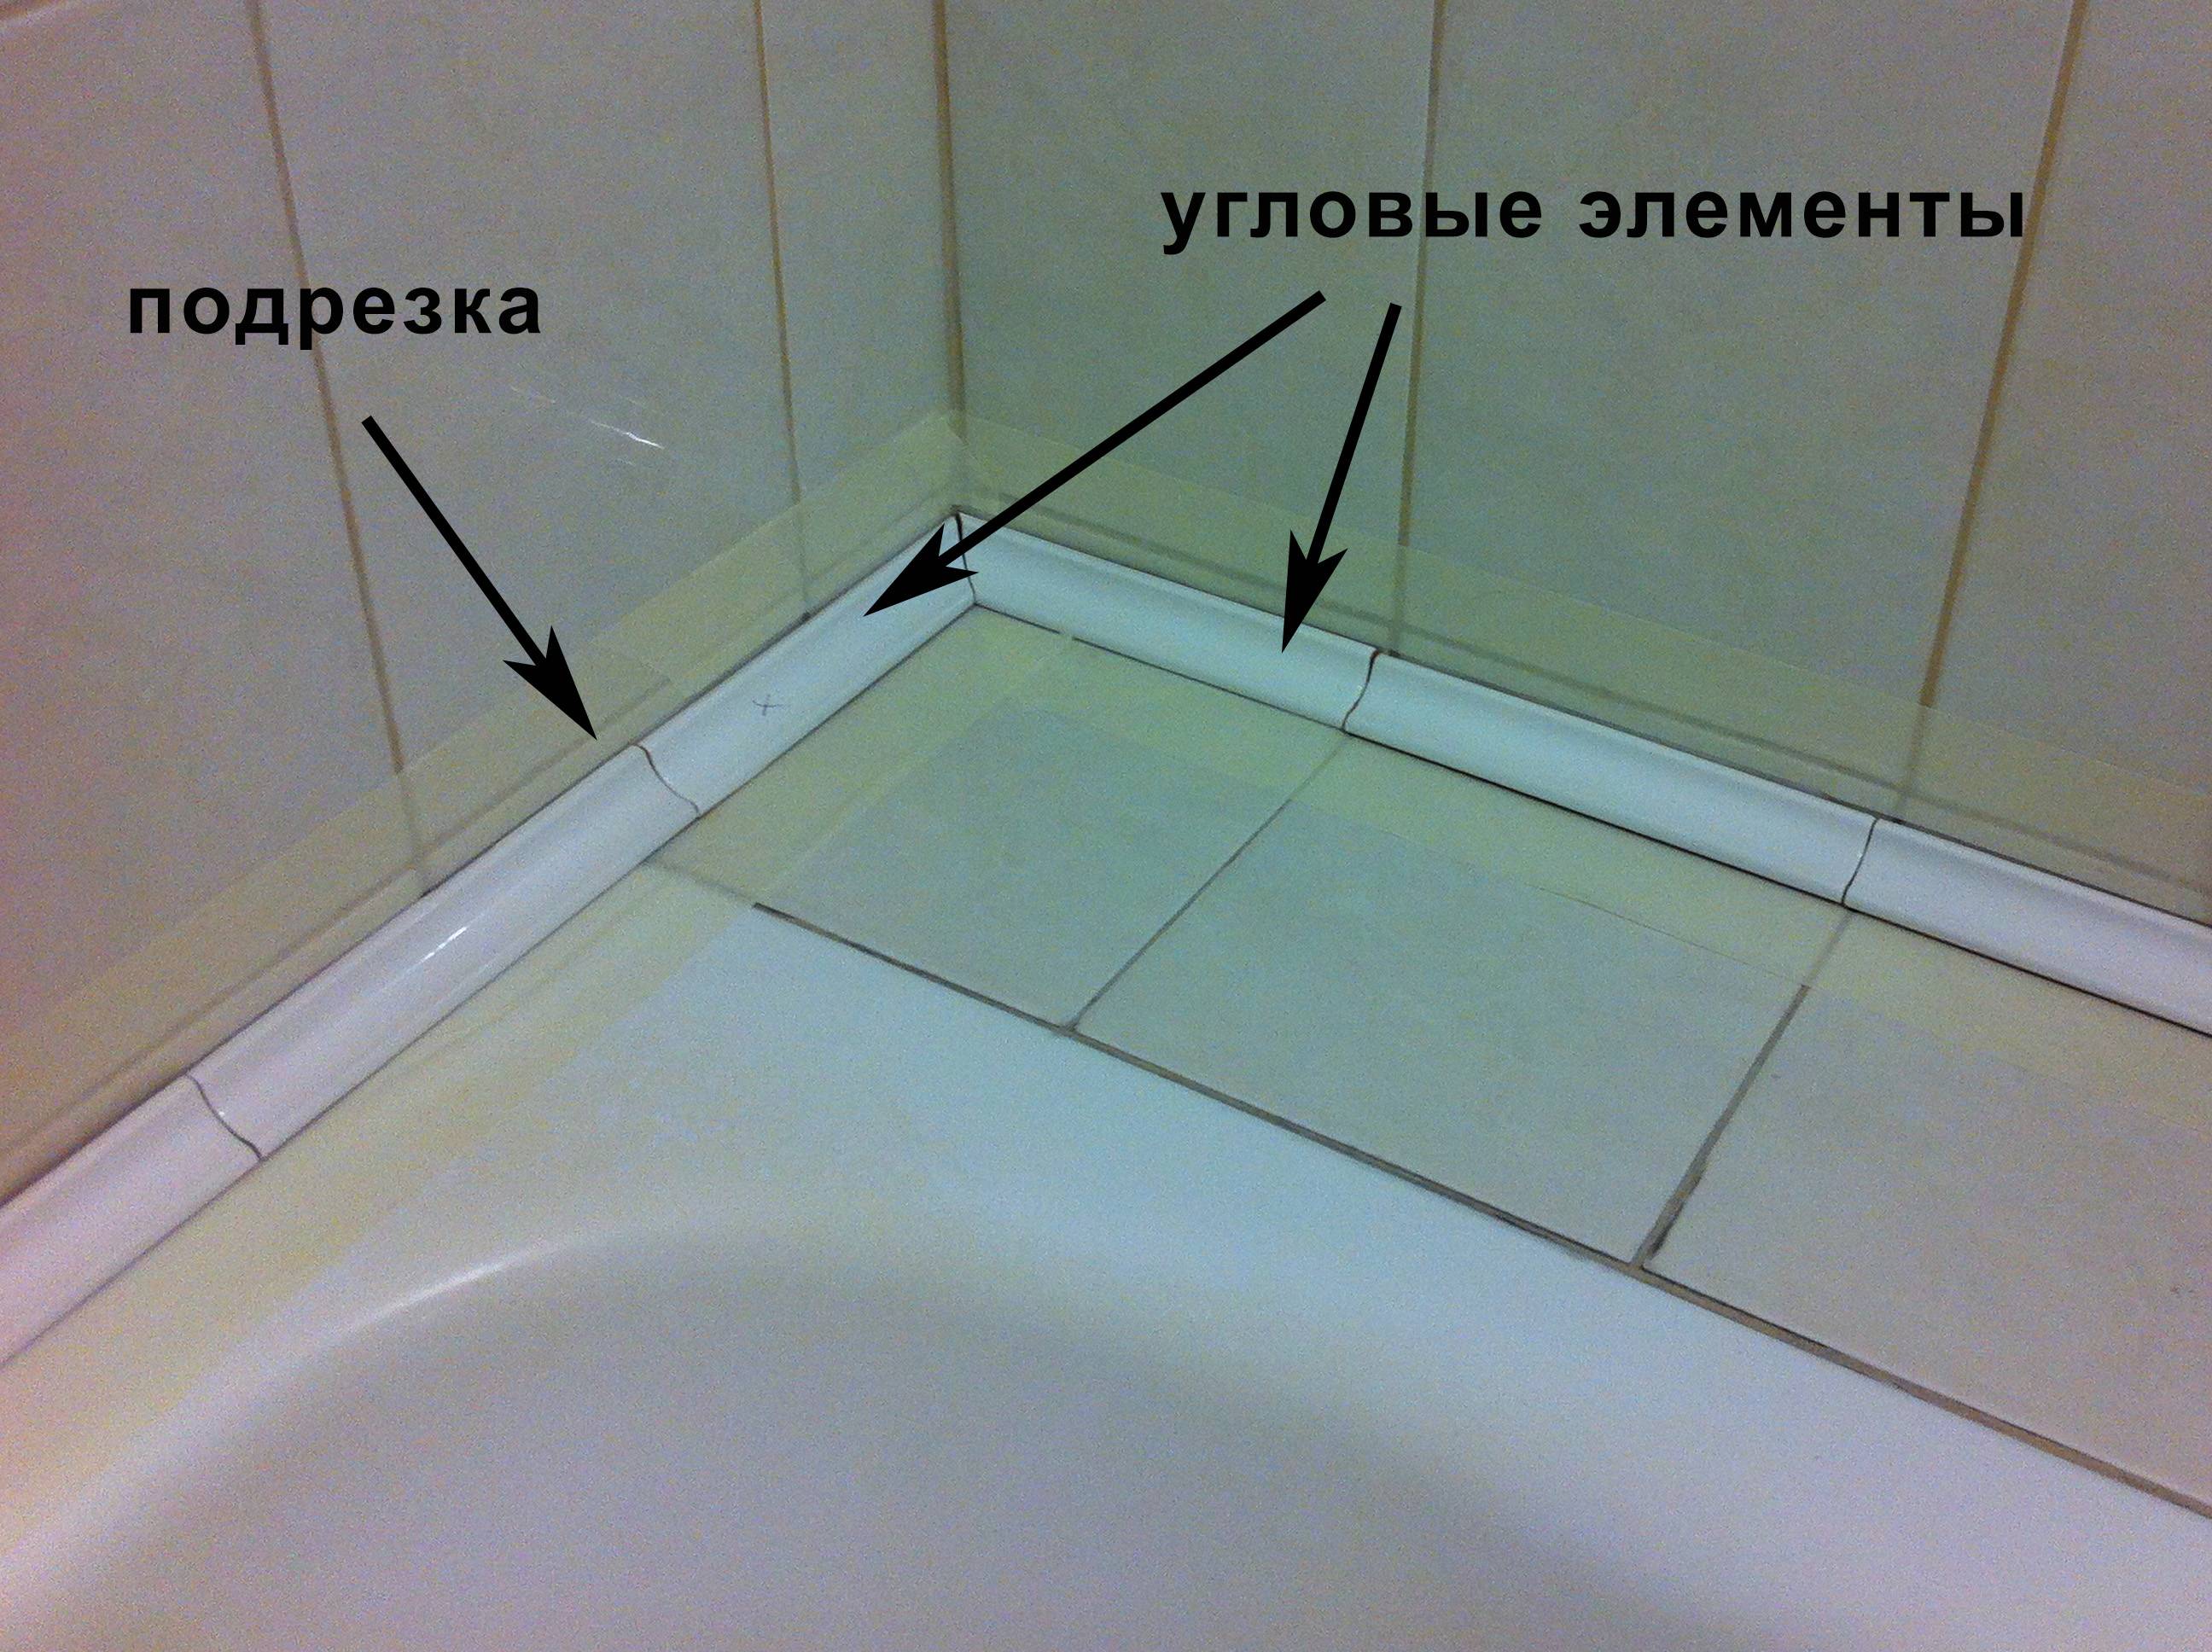 Что сначала: плитка или ванна? определяем последовательность